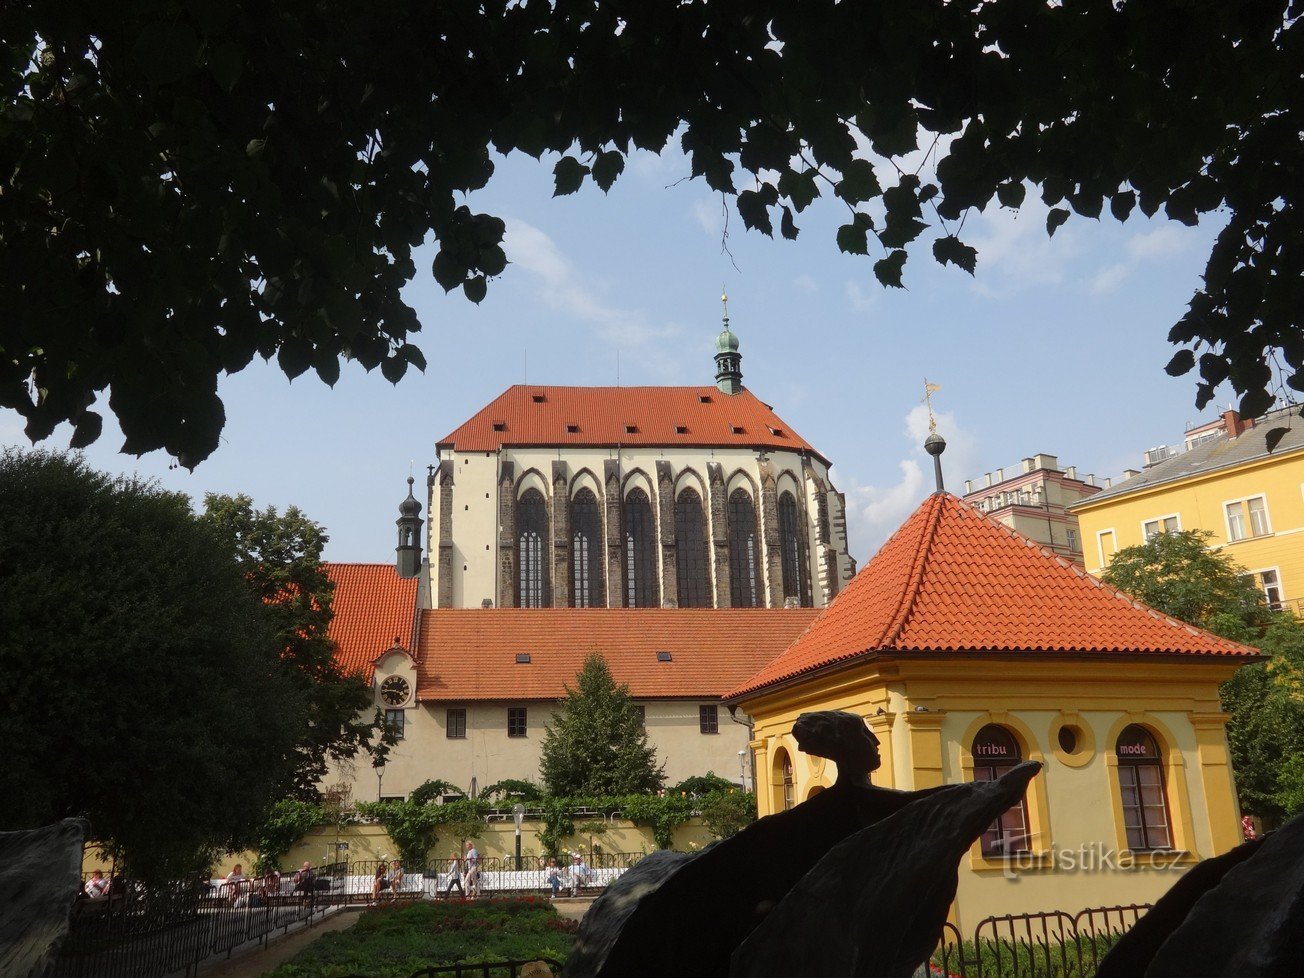 Gothic Cathedral of Our Lady of the Snows - den højeste kirke med det højeste alter i Prag